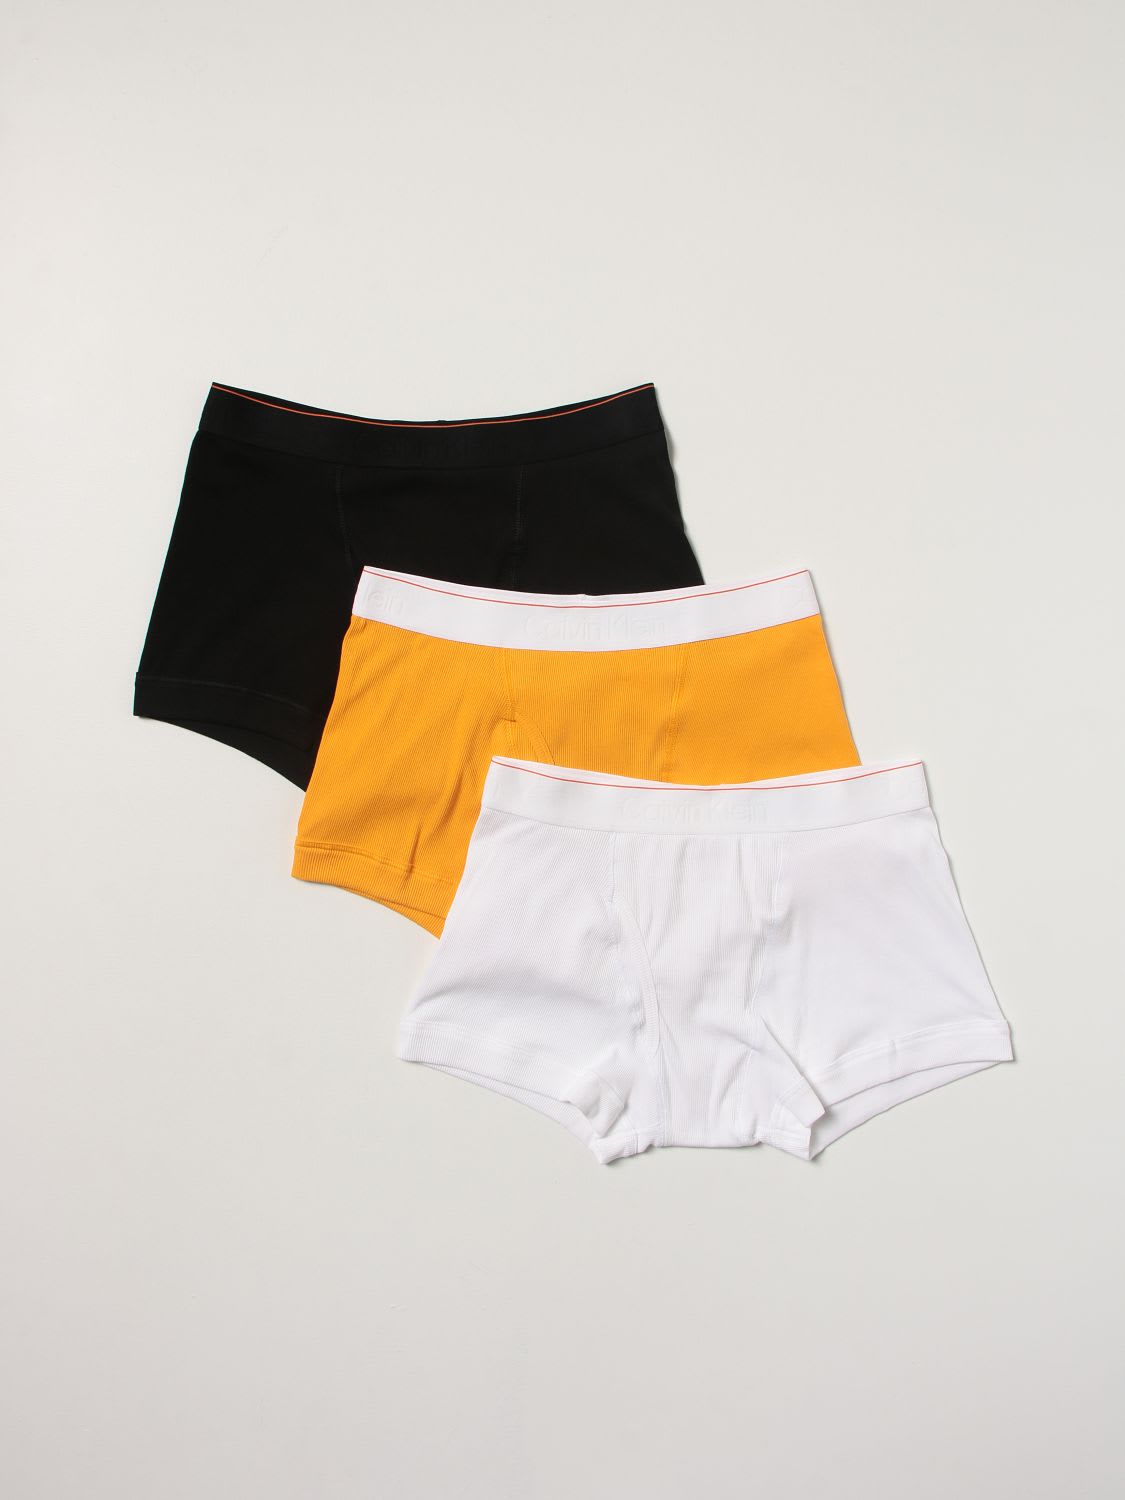 Heron Preston For Calvin Klein Underwear Set 3 Boxers Orange 2.0 Heron Preston X Calvin Klein With Logo